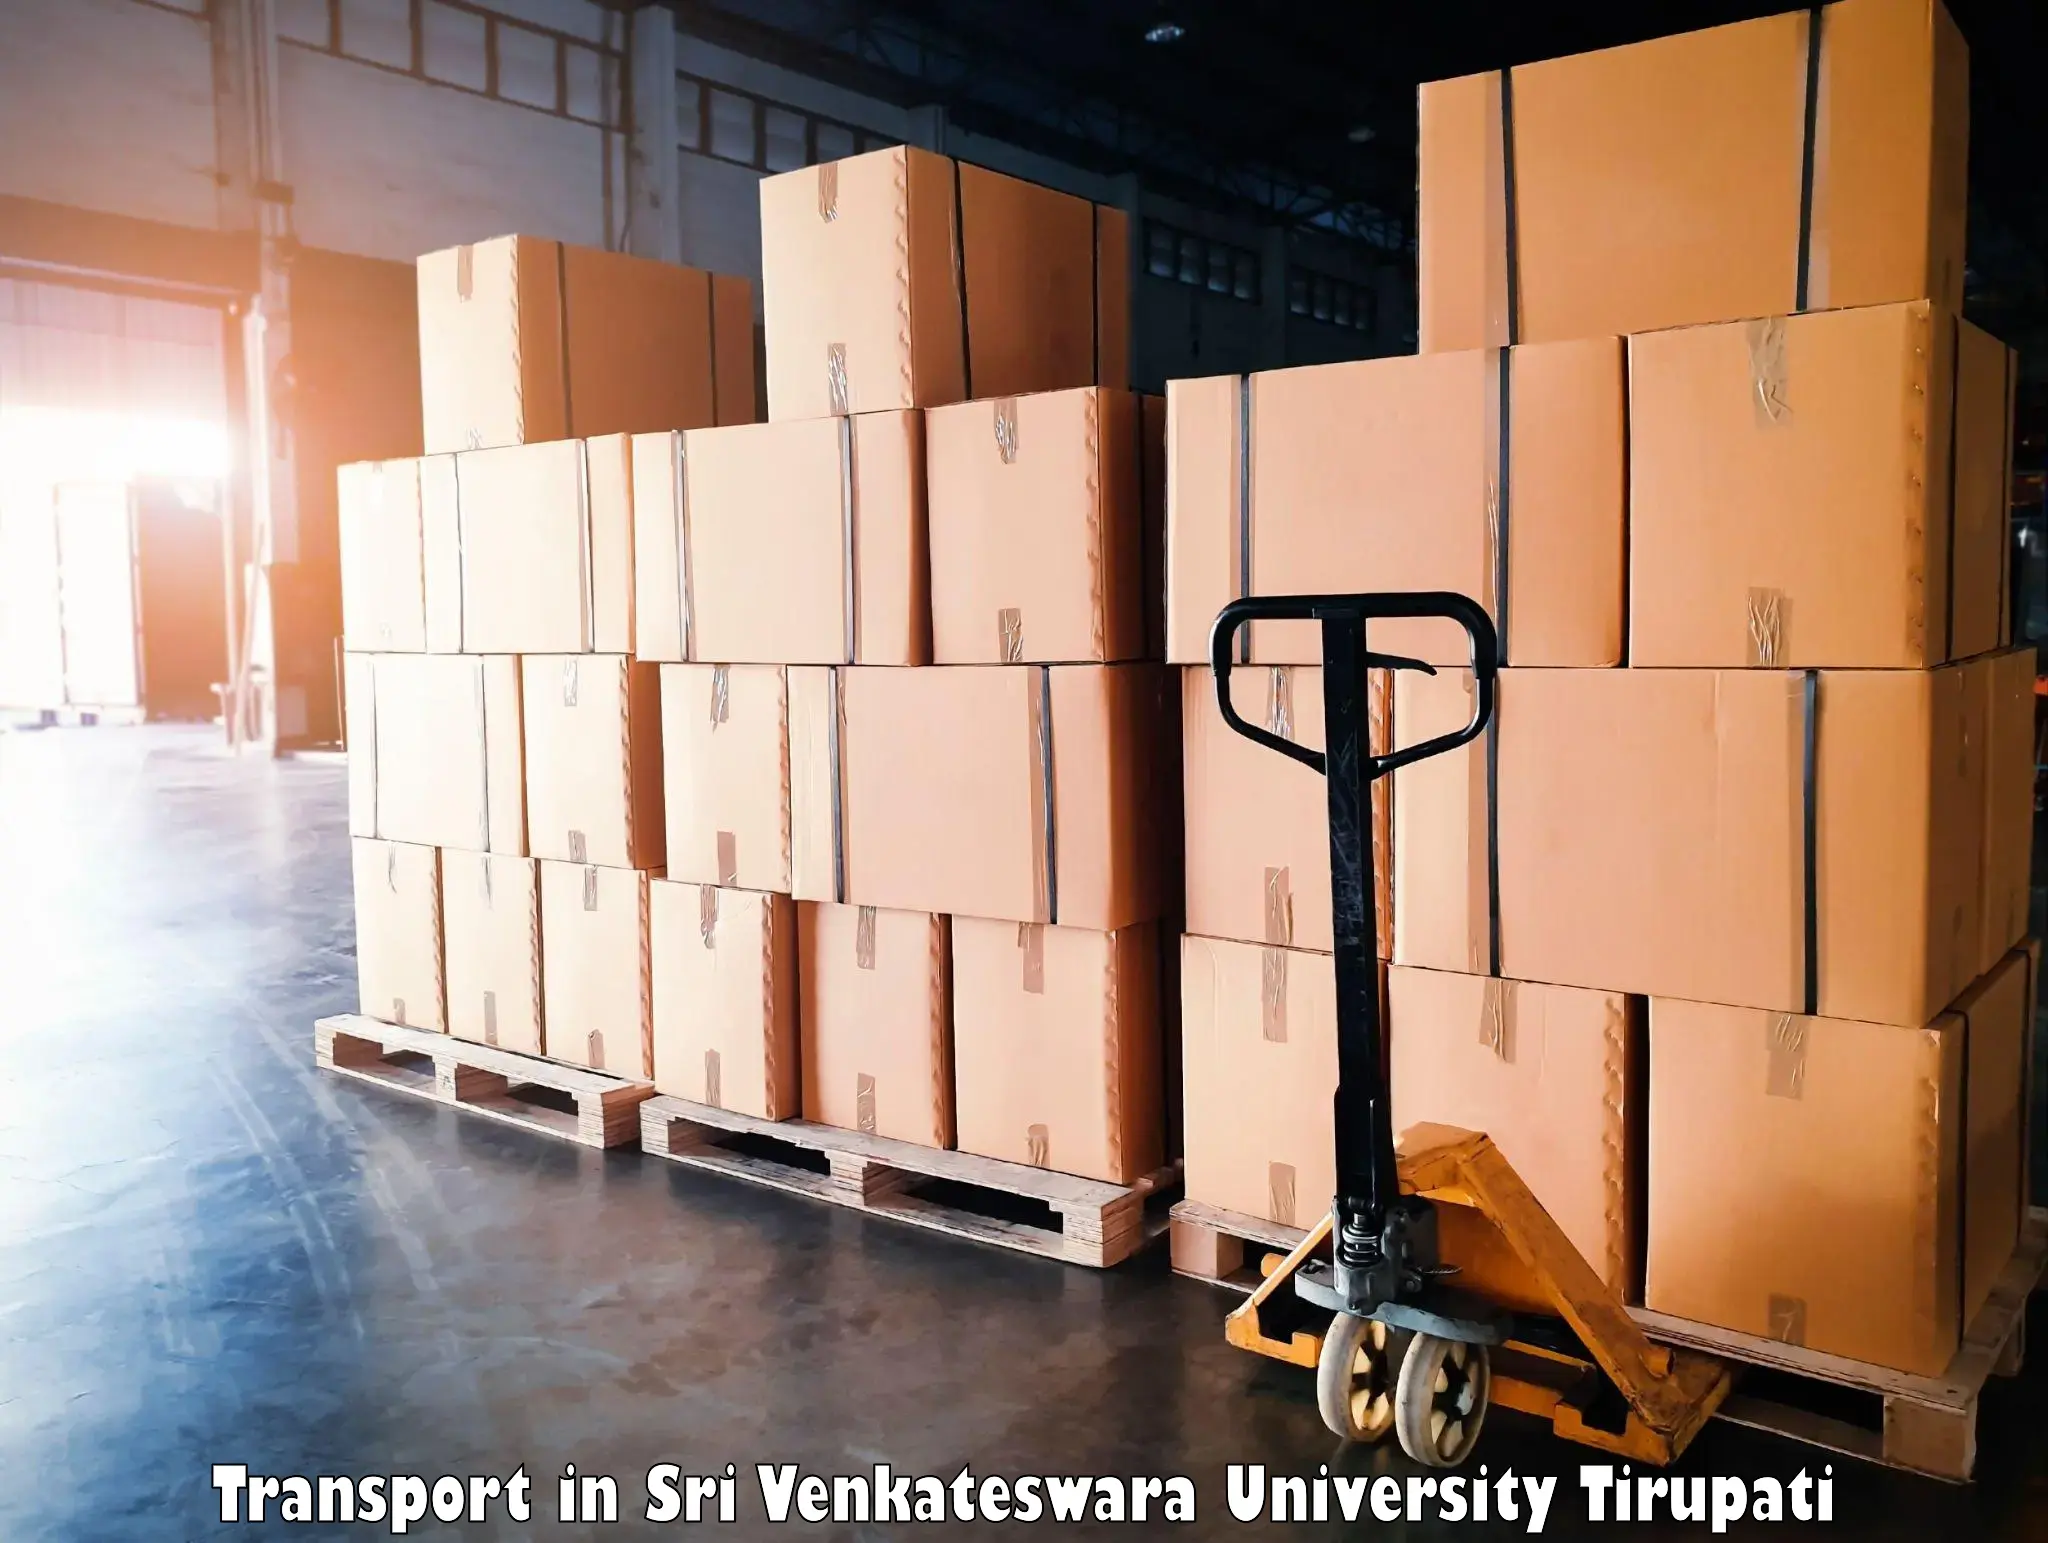 Cargo train transport services in Sri Venkateswara University Tirupati